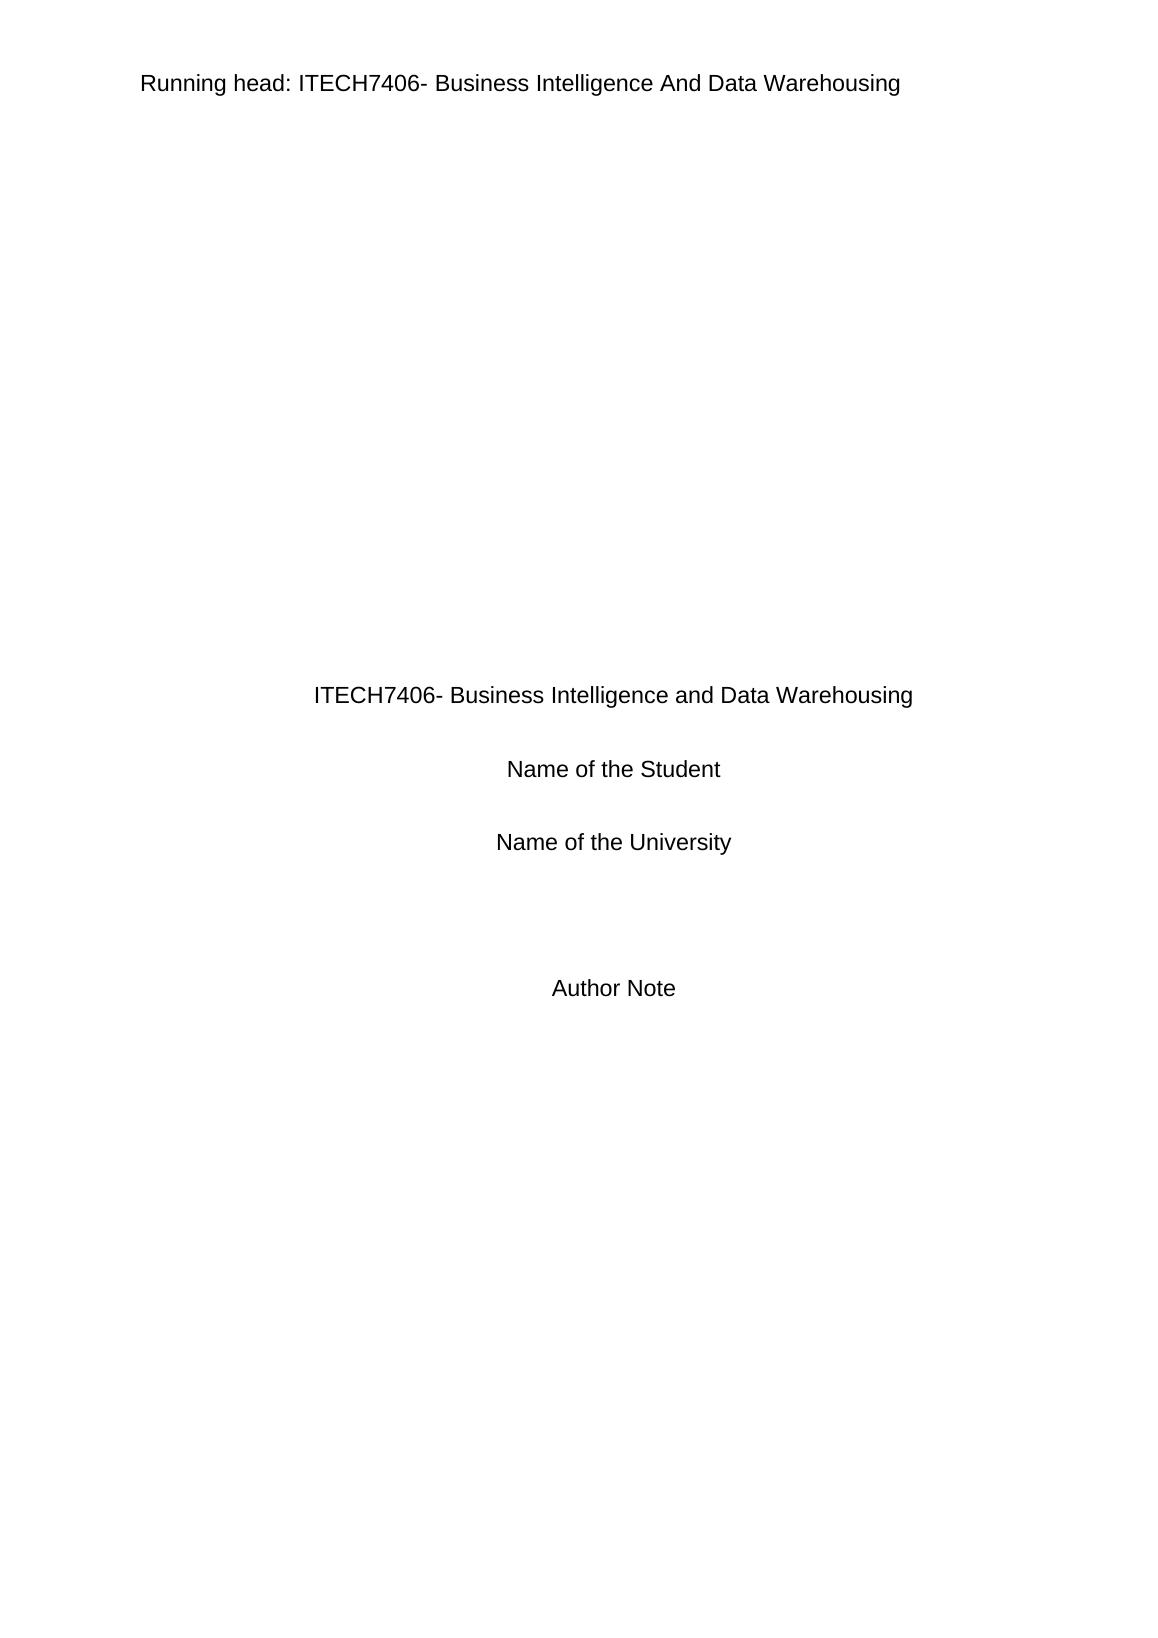 ITECH7406 Business Intelligence and Data Warehousing_1